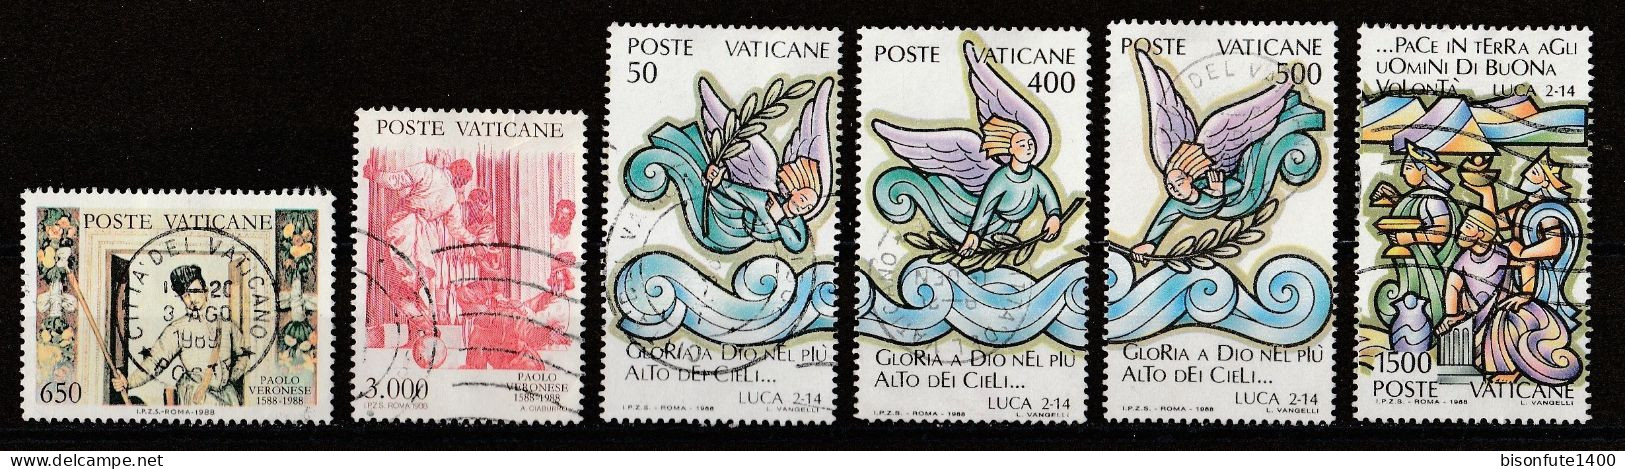 Vatican 1988 : Timbres Yvert & Tellier N° 841 - 842 - 843 - 844 - 845 Et 848 Oblitérés. - Gebruikt